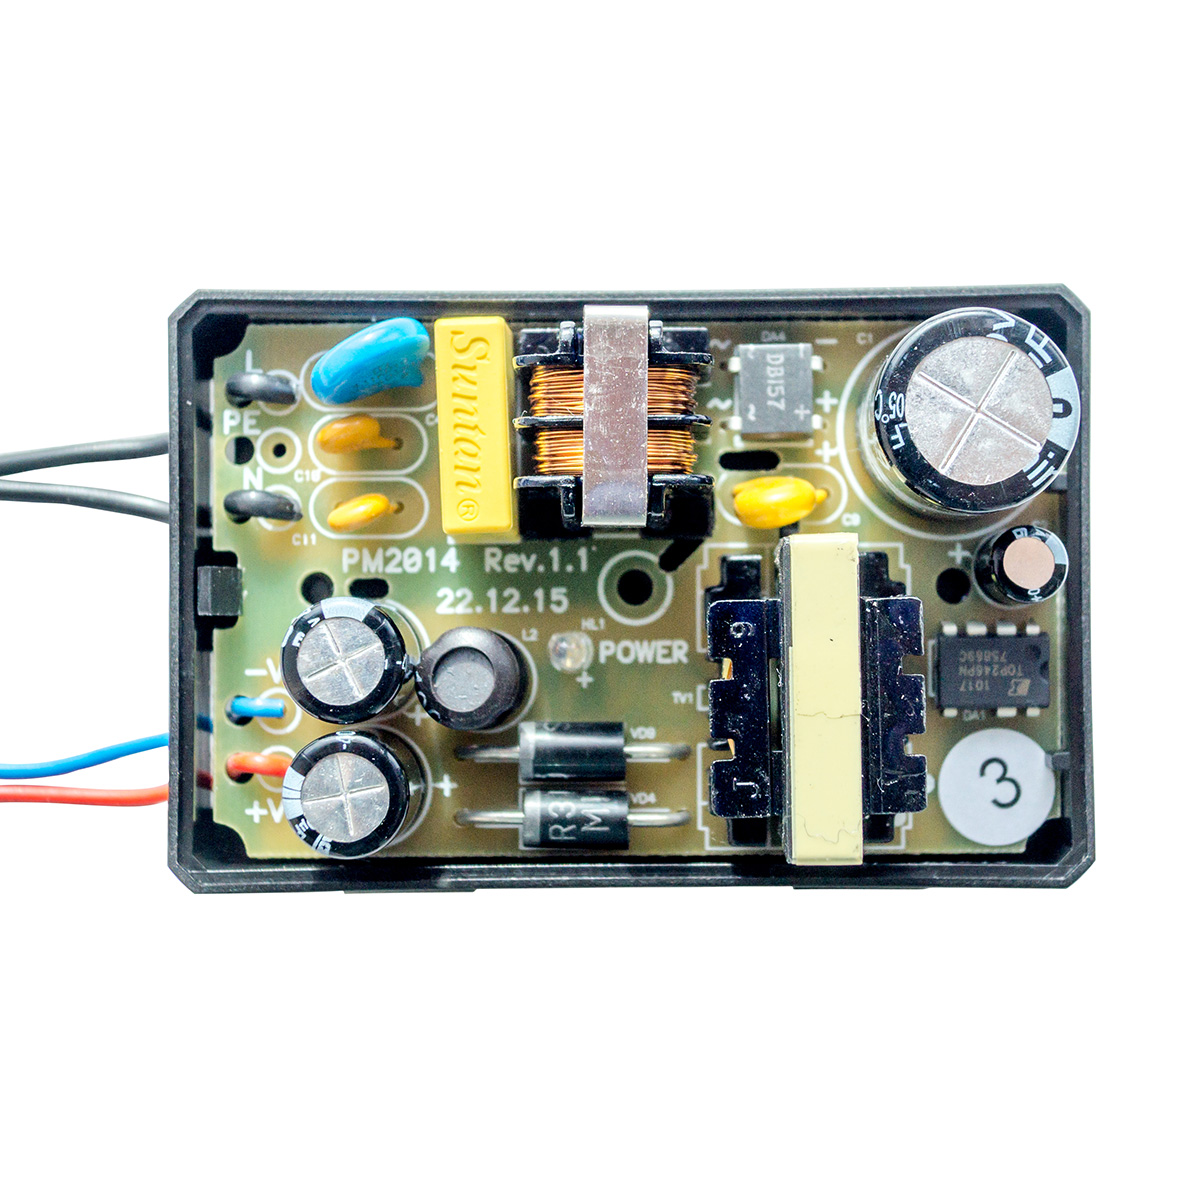 Блок питания для контроллеров Мираж-GSM-M8-03, Мираж-GSM-А8-03. Выходное напряжение 14,25В, выходной ток 1,4А, выходная мощность 20Вт.